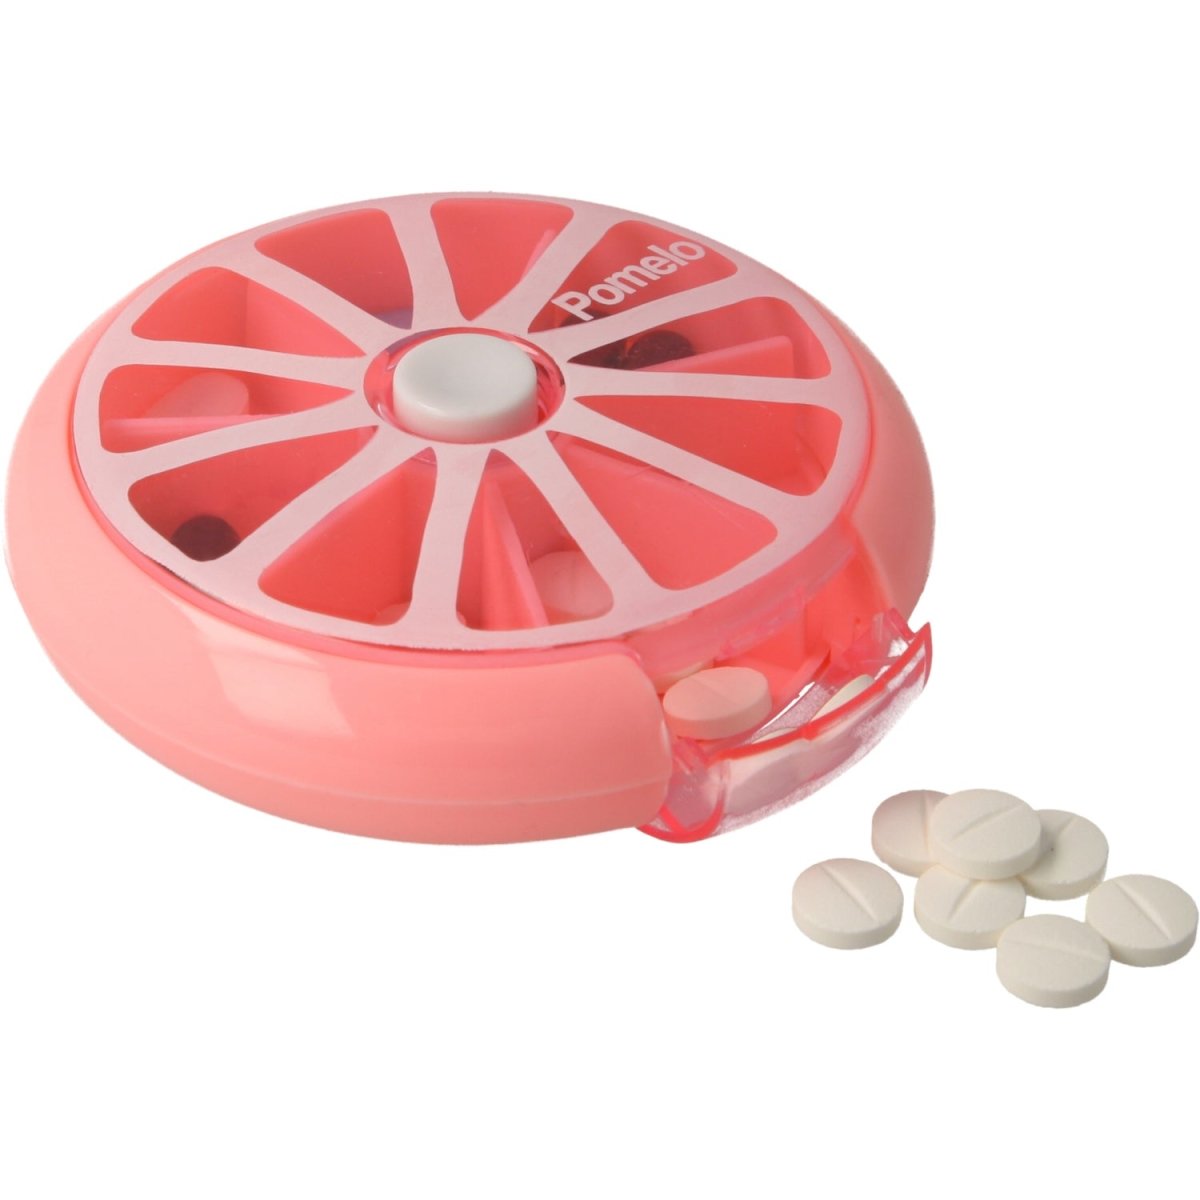 Pastillero pequeño diario bolsillo - 7 compartimentos - Organizador de pastillas pill box estuche redondo - Color rosa - movilcom.com